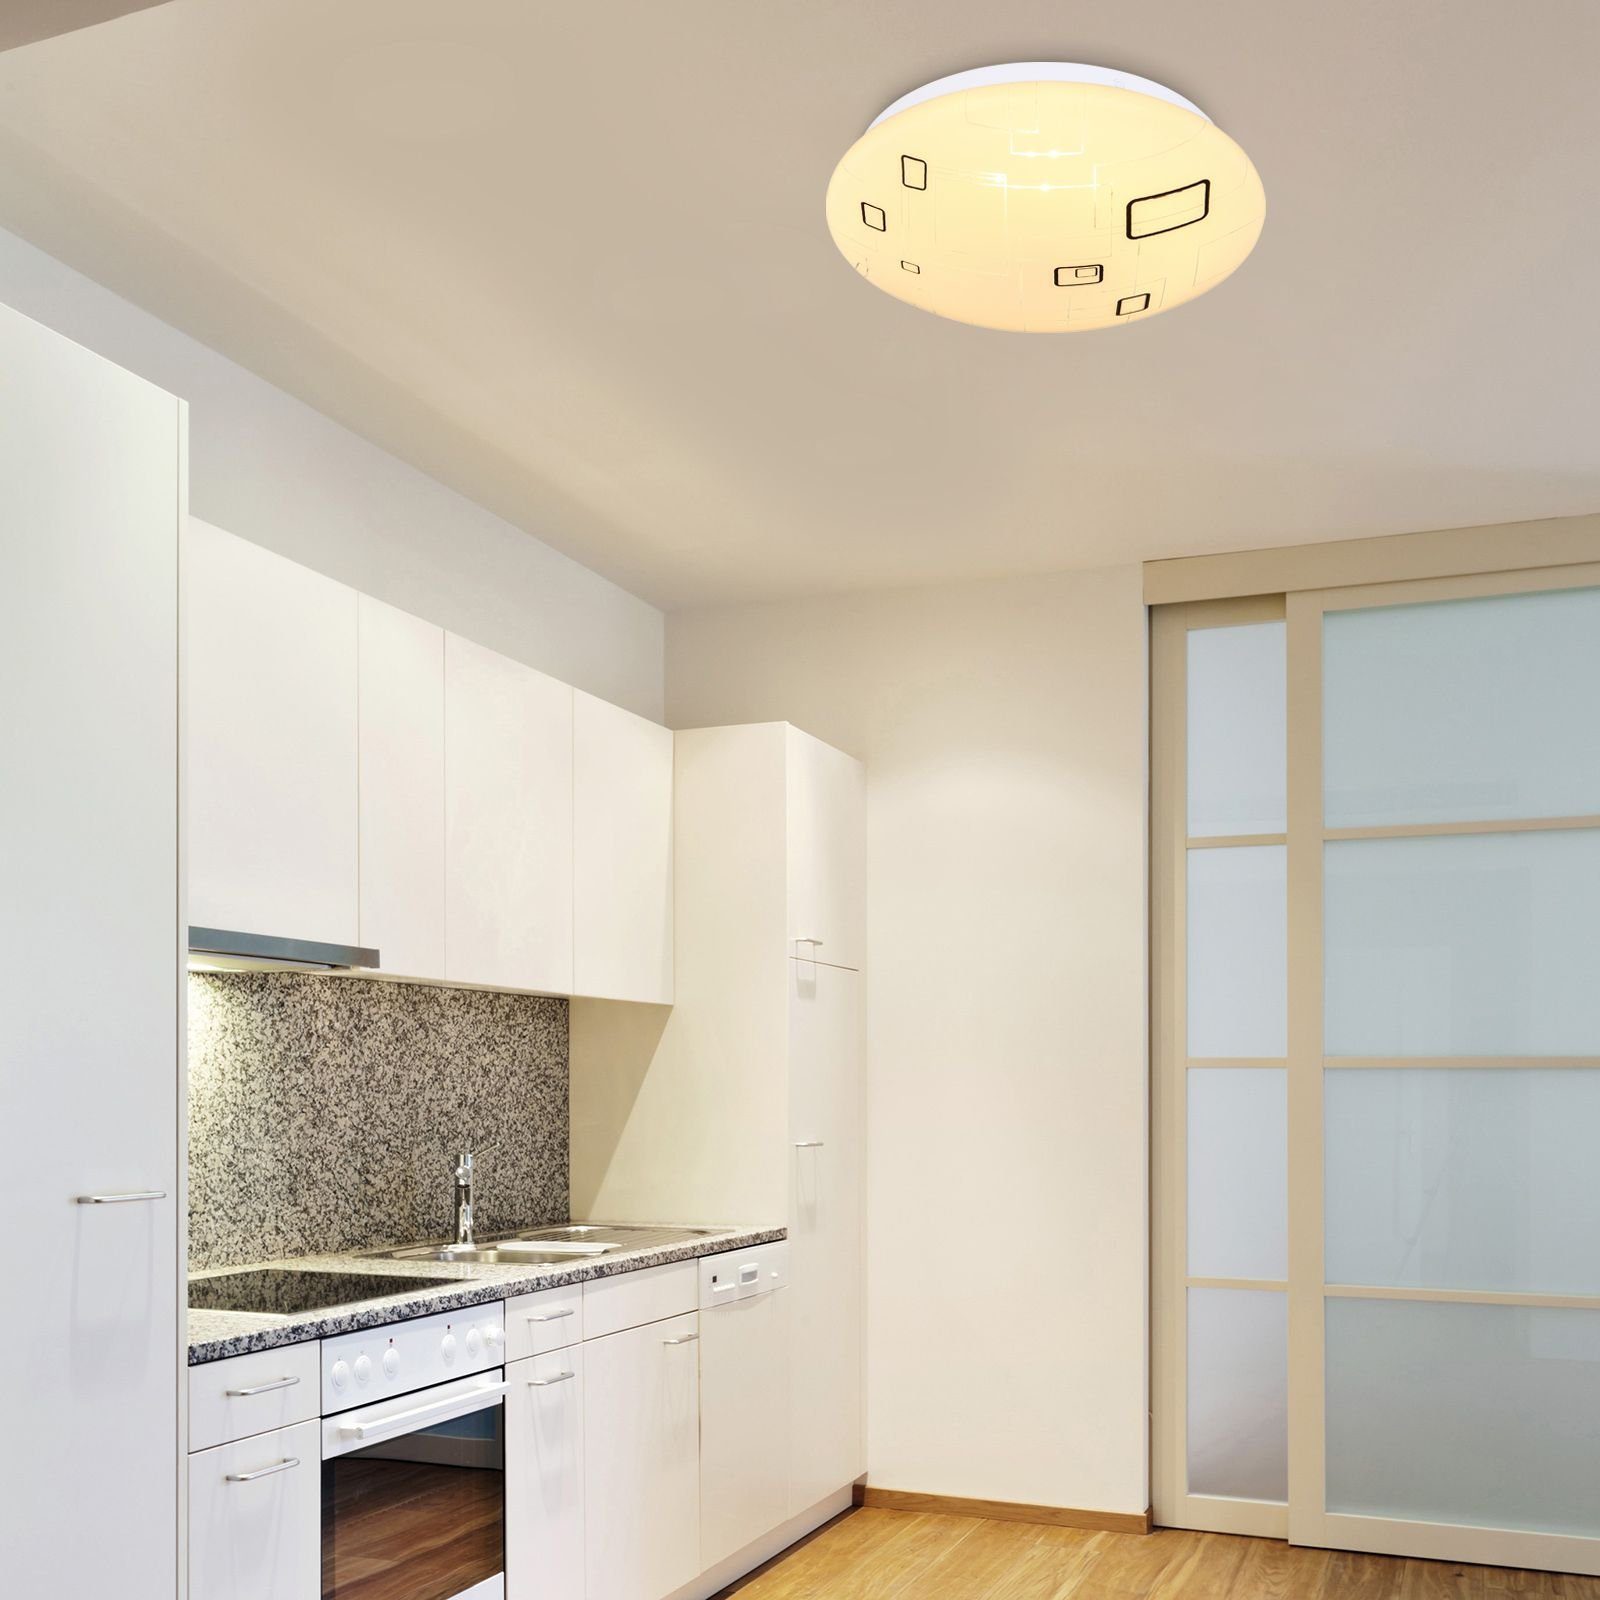 Globo Deckenleuchte GLOBO Deckenleuchte LED Wohnzimmer Flur Bad Küche Deckenlampe 26 cm